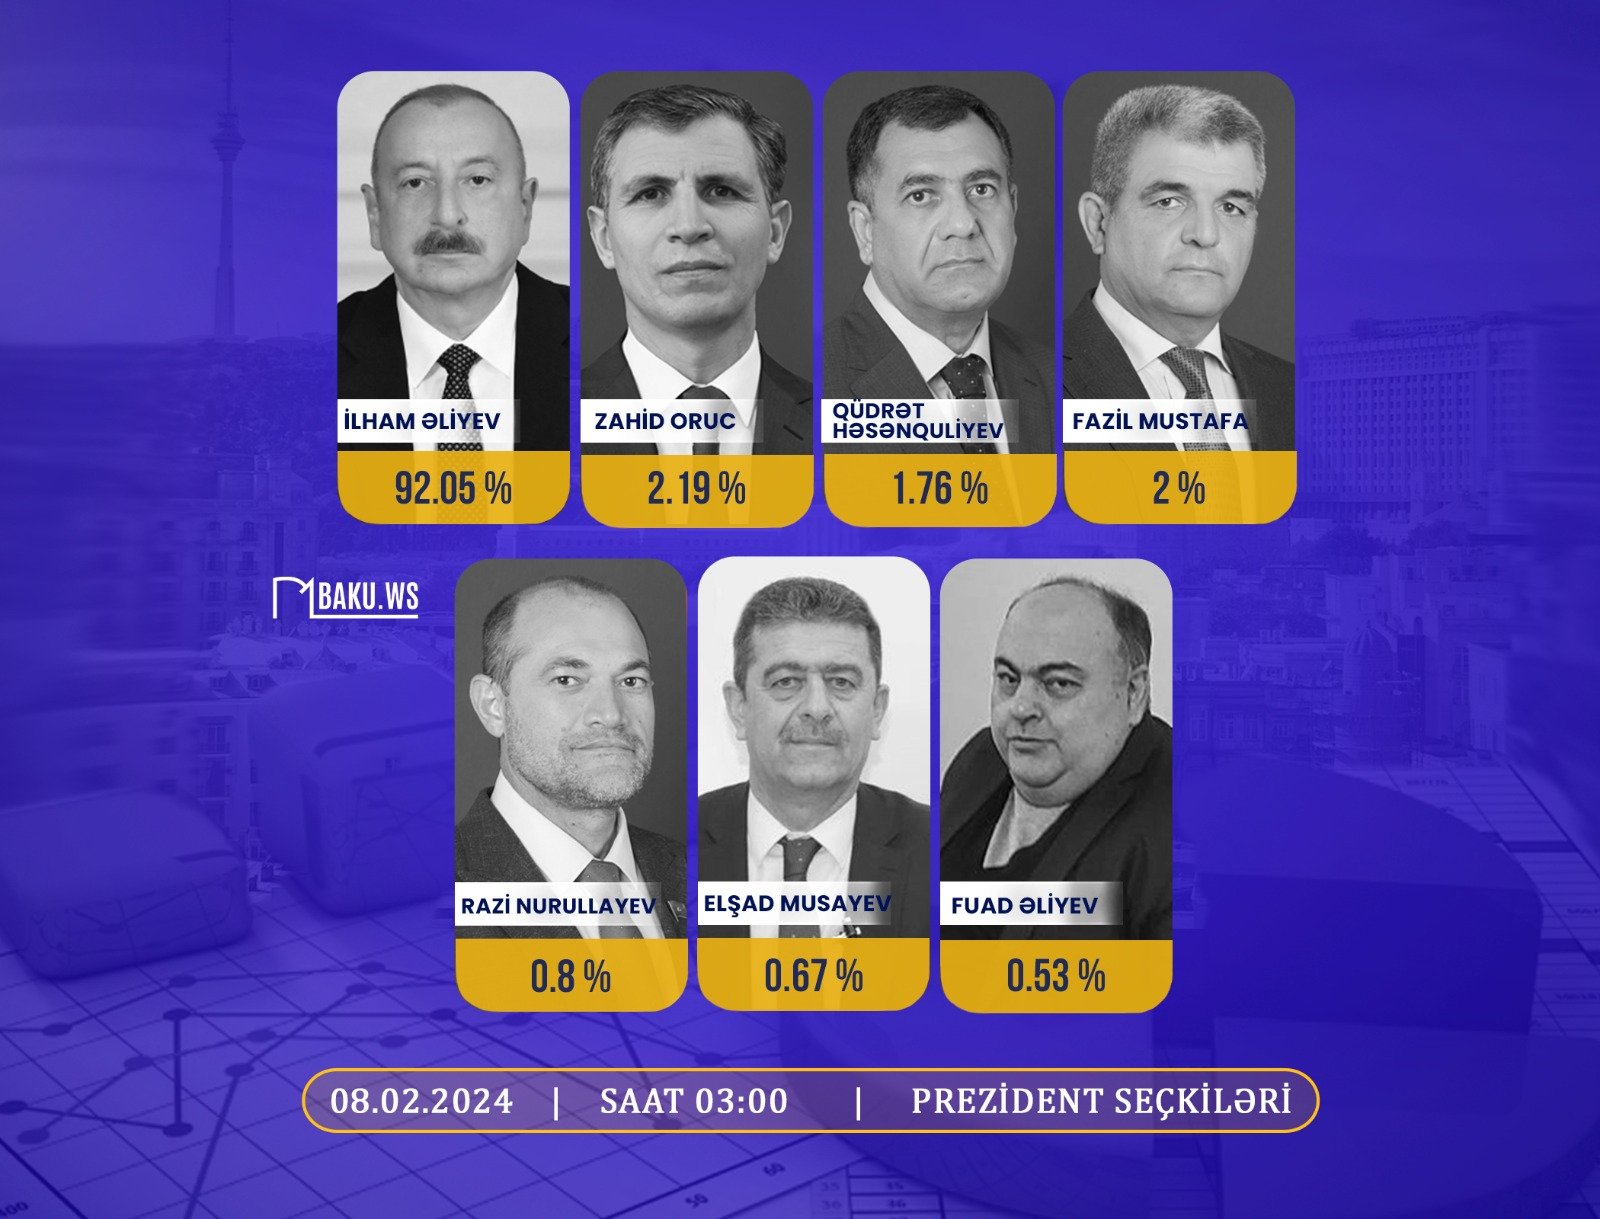 MSK səslərin 93,3 faizini sayıb: İlham Əliyev 92,05% səslə liderdir - YENİLƏNİB + VİDEO